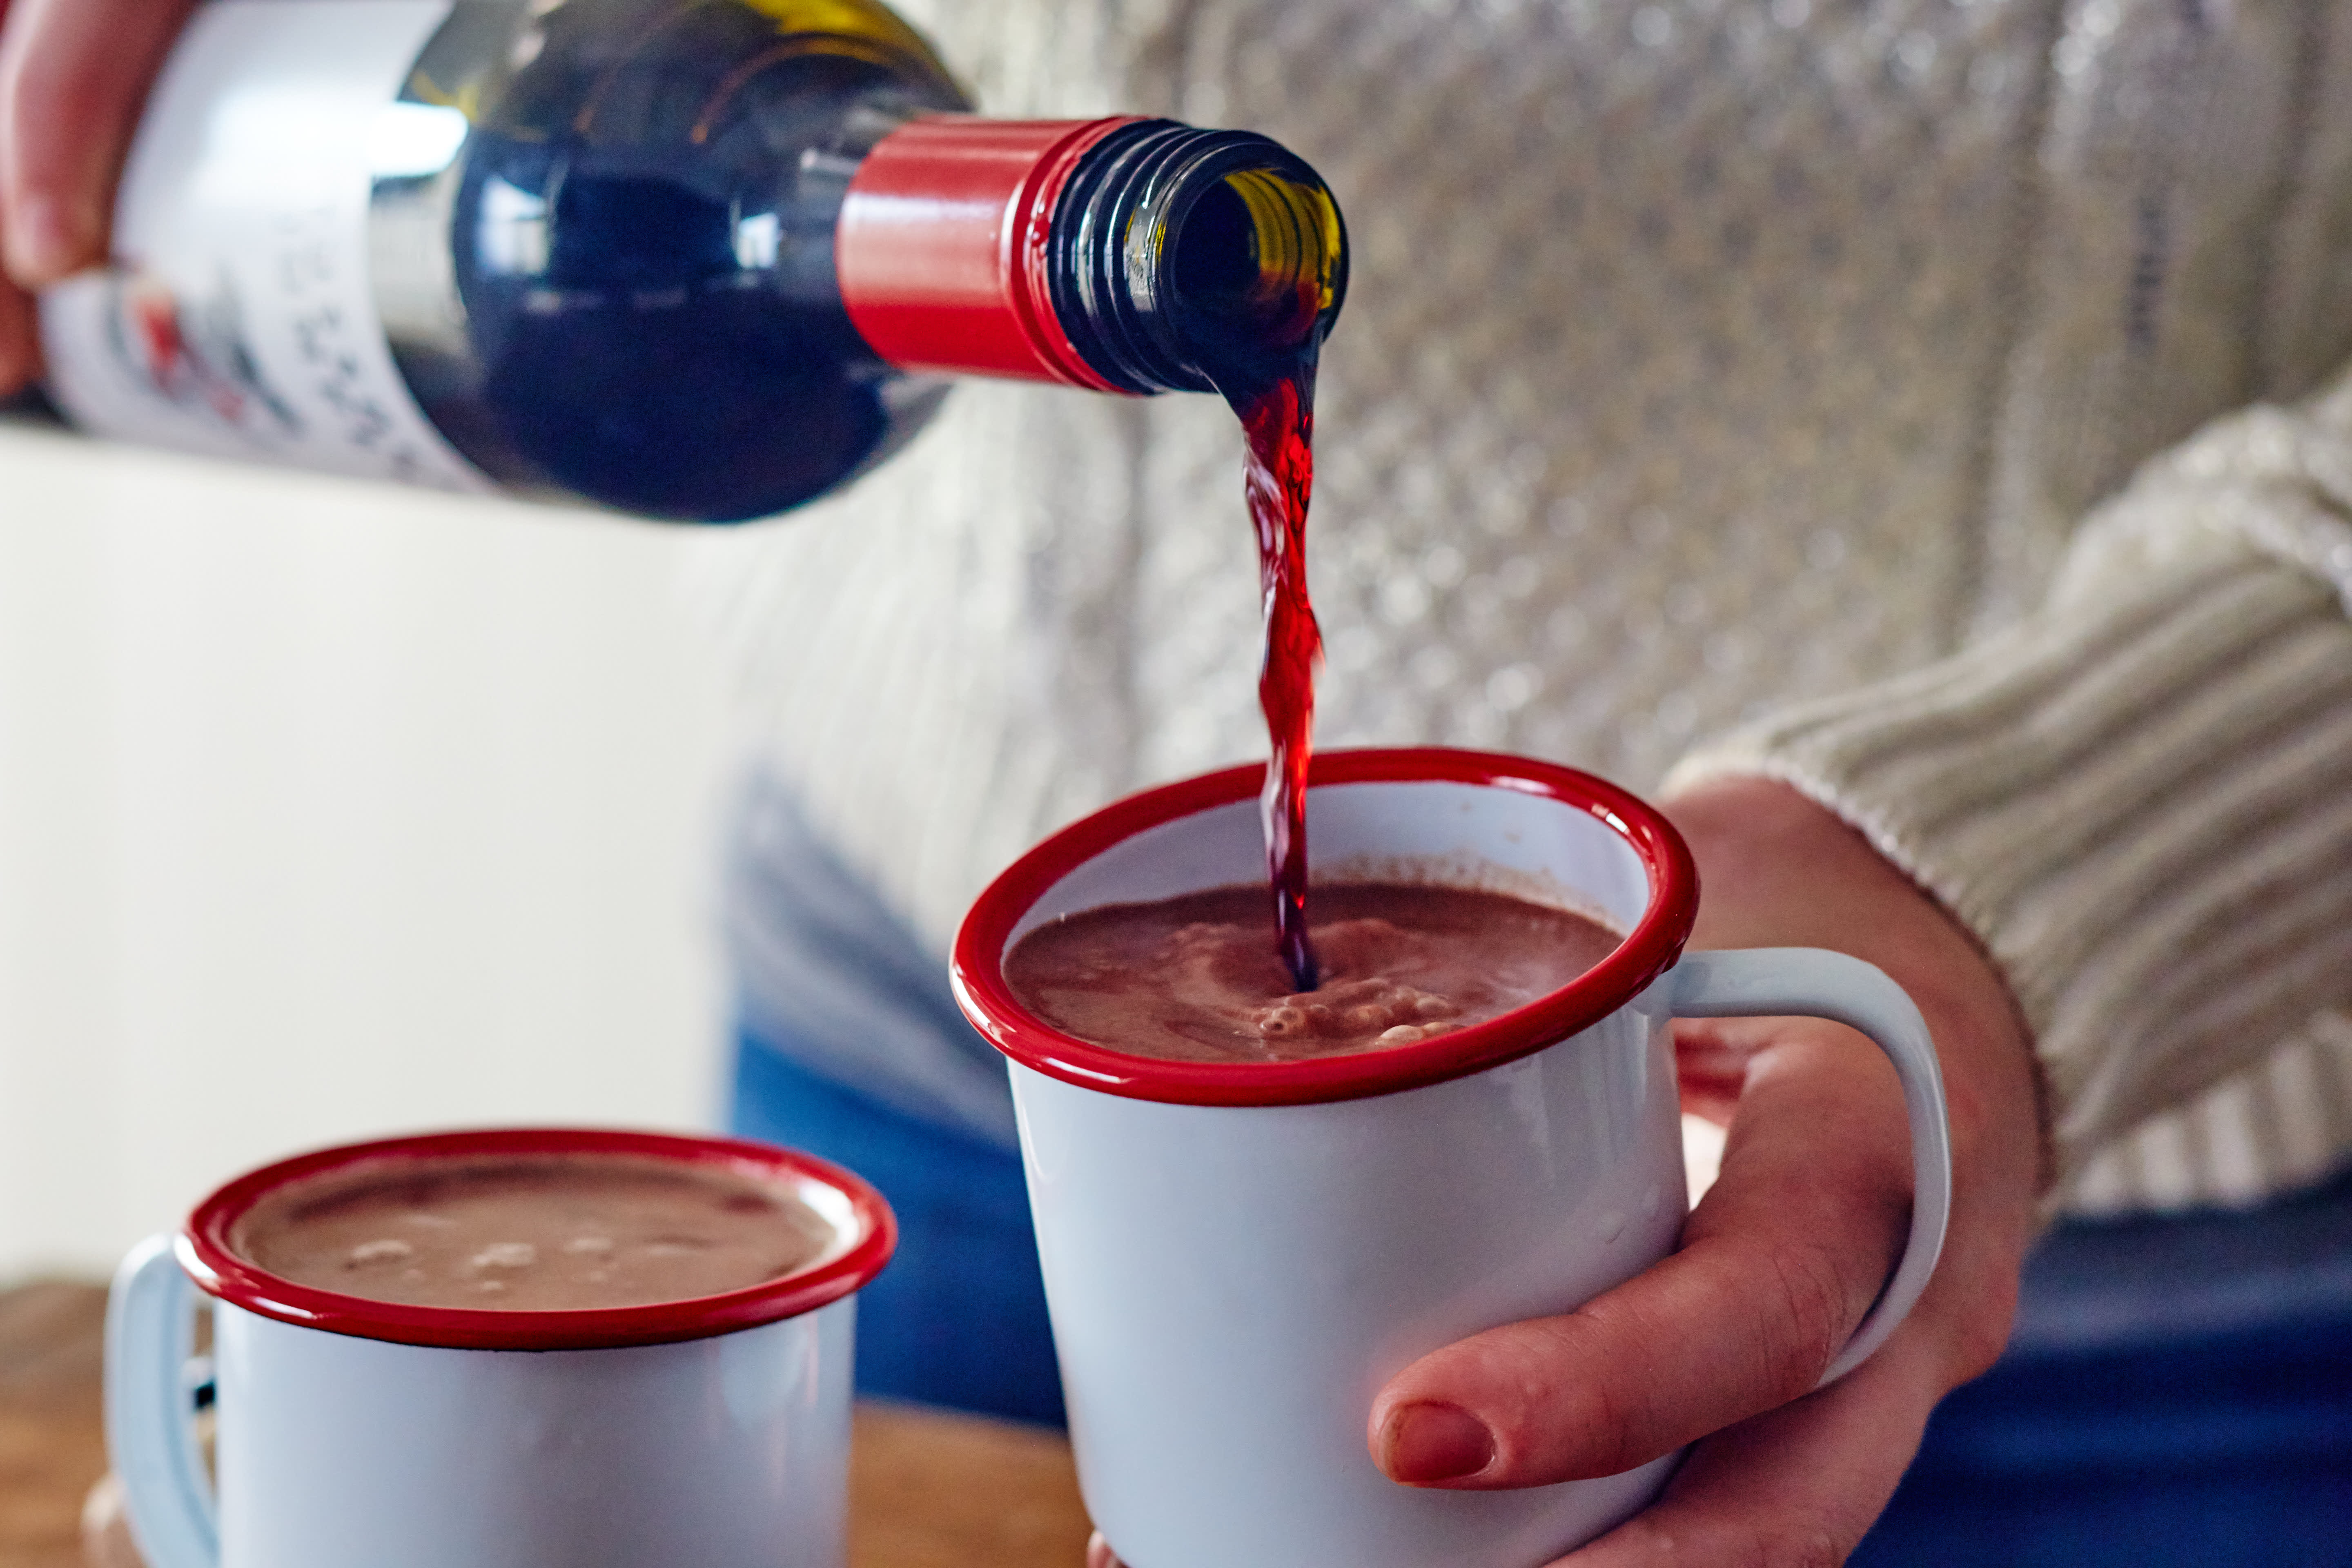 Red Wine Hot Chocolate